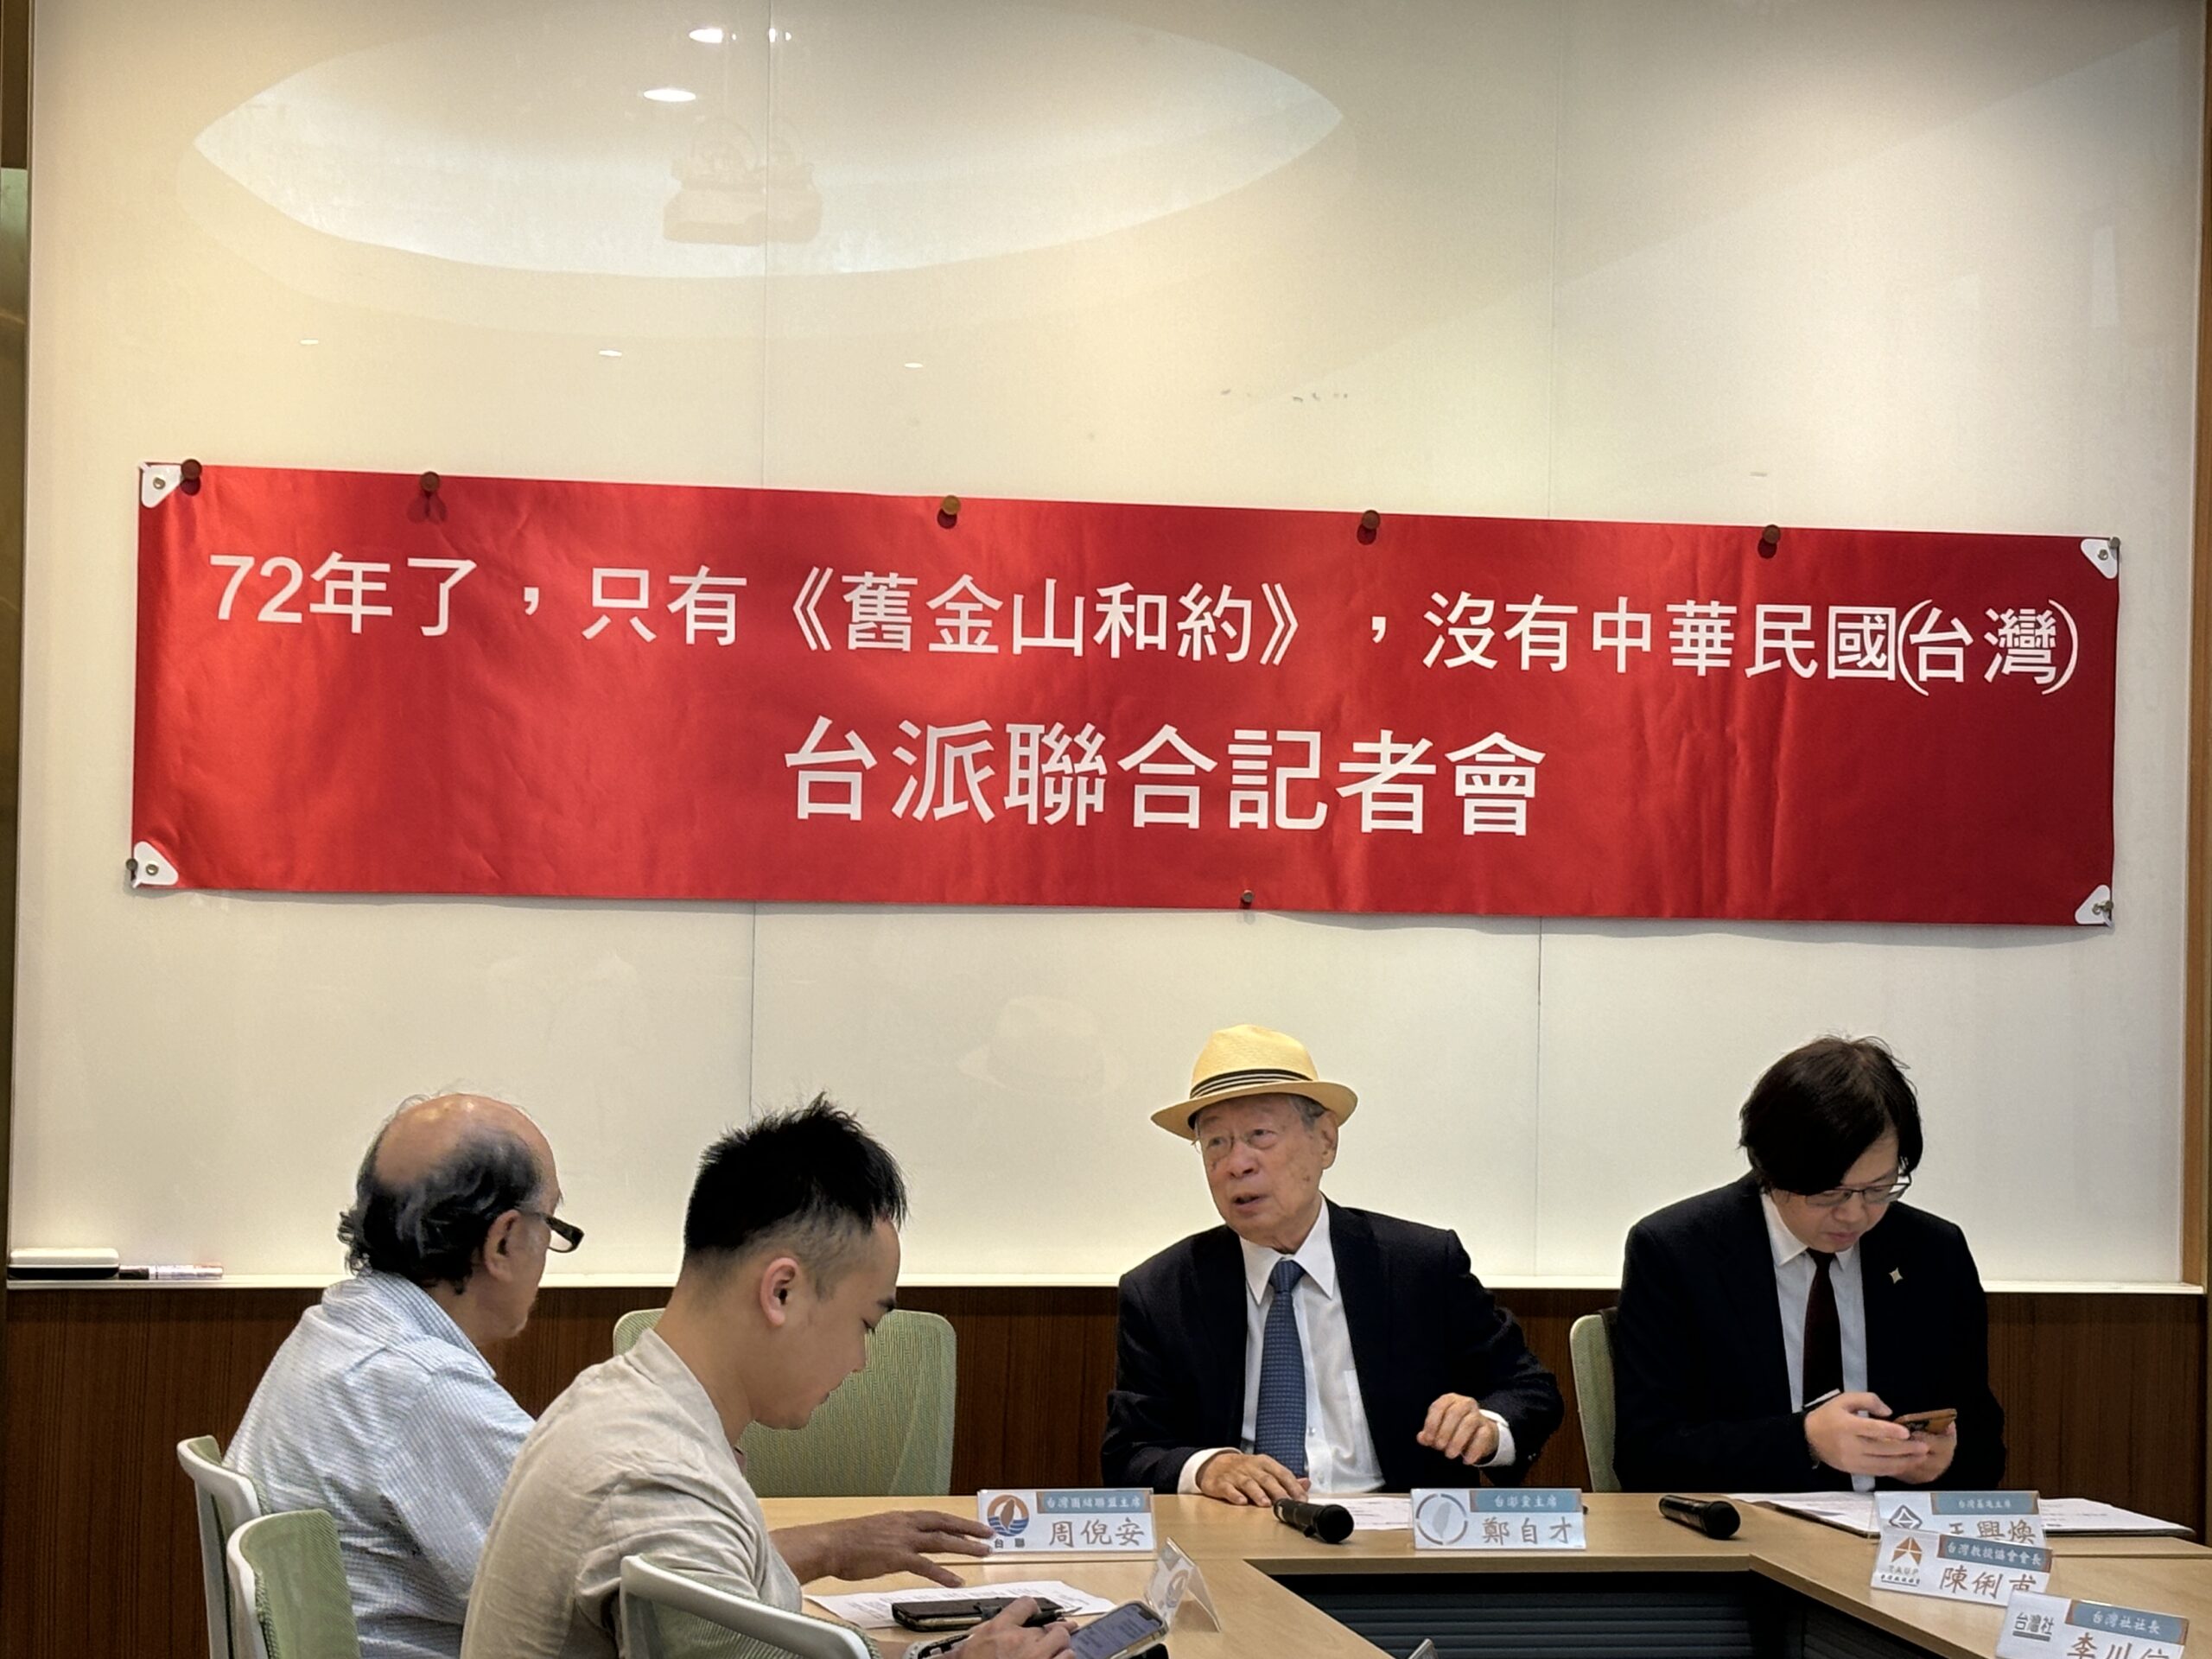 72年假議題『台灣光復』  台派團體召開記者會